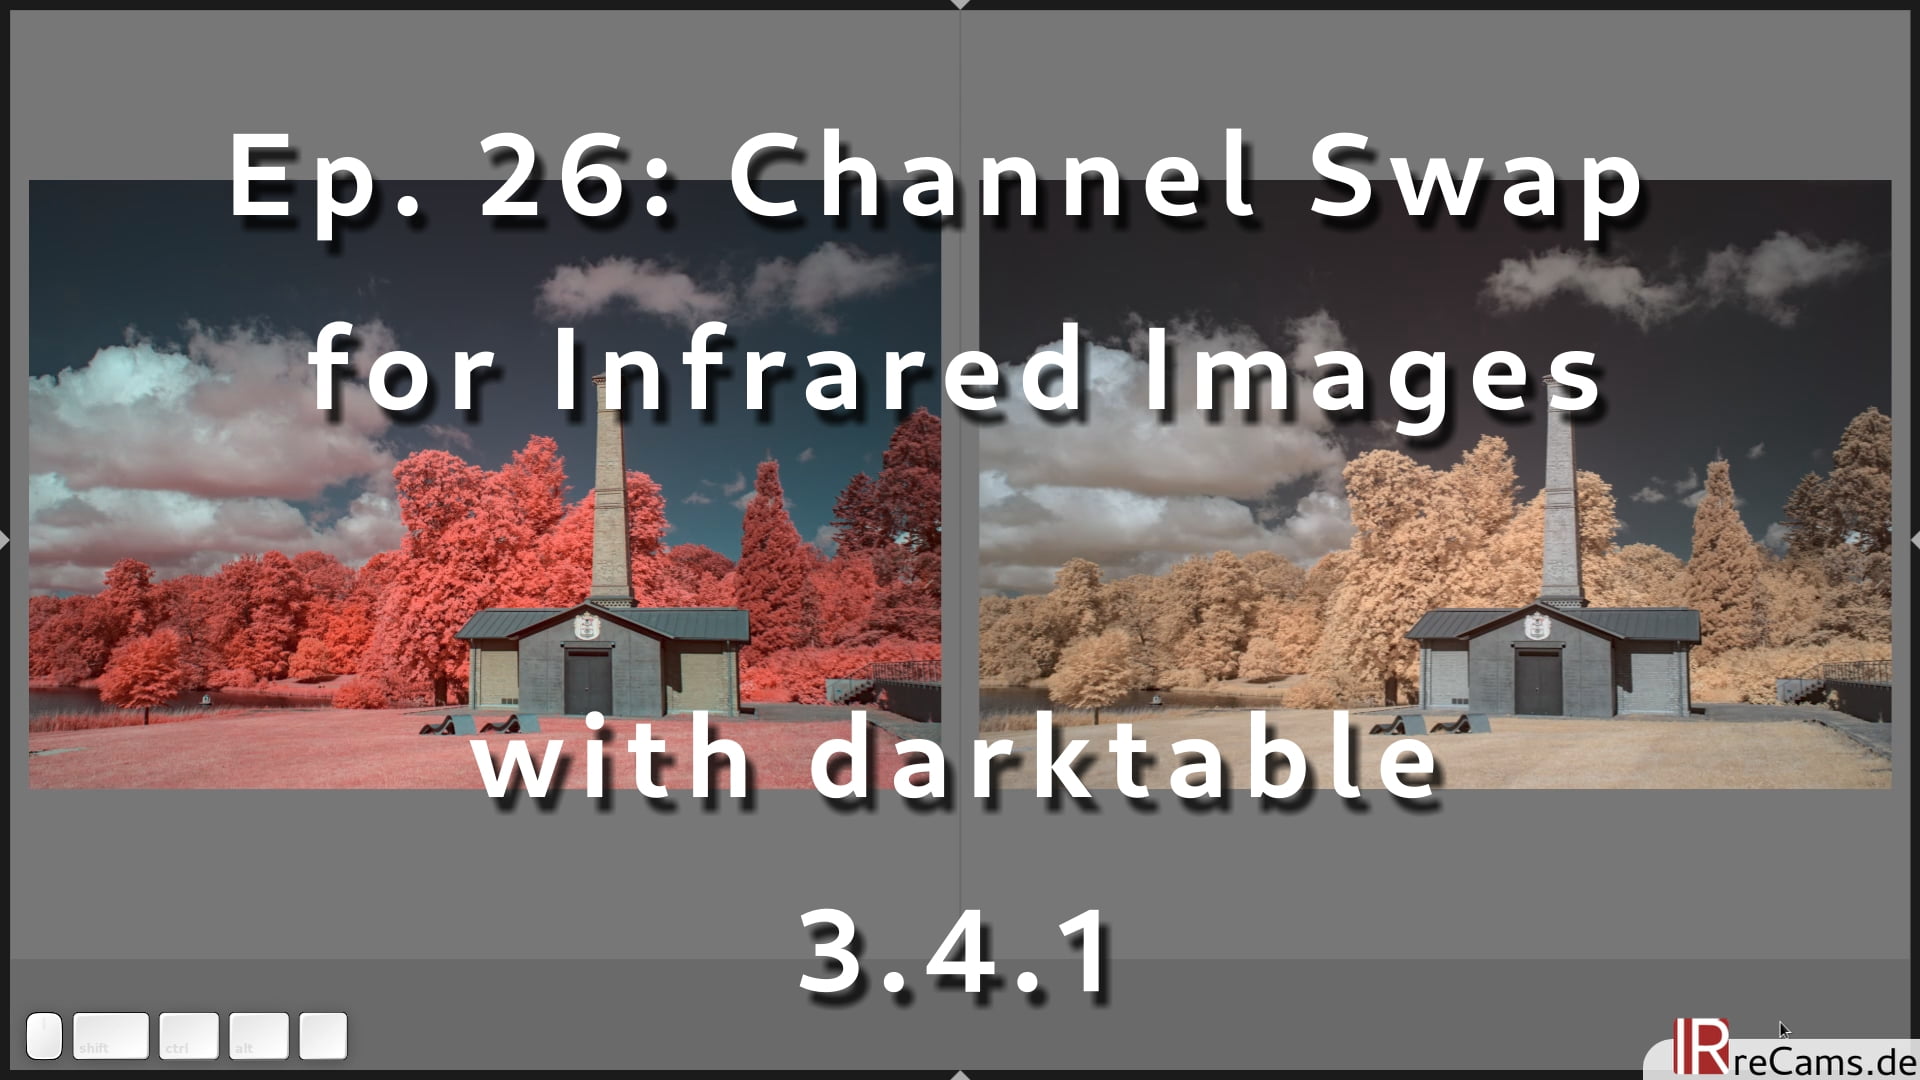 instal the last version for ios darktable 4.4.0